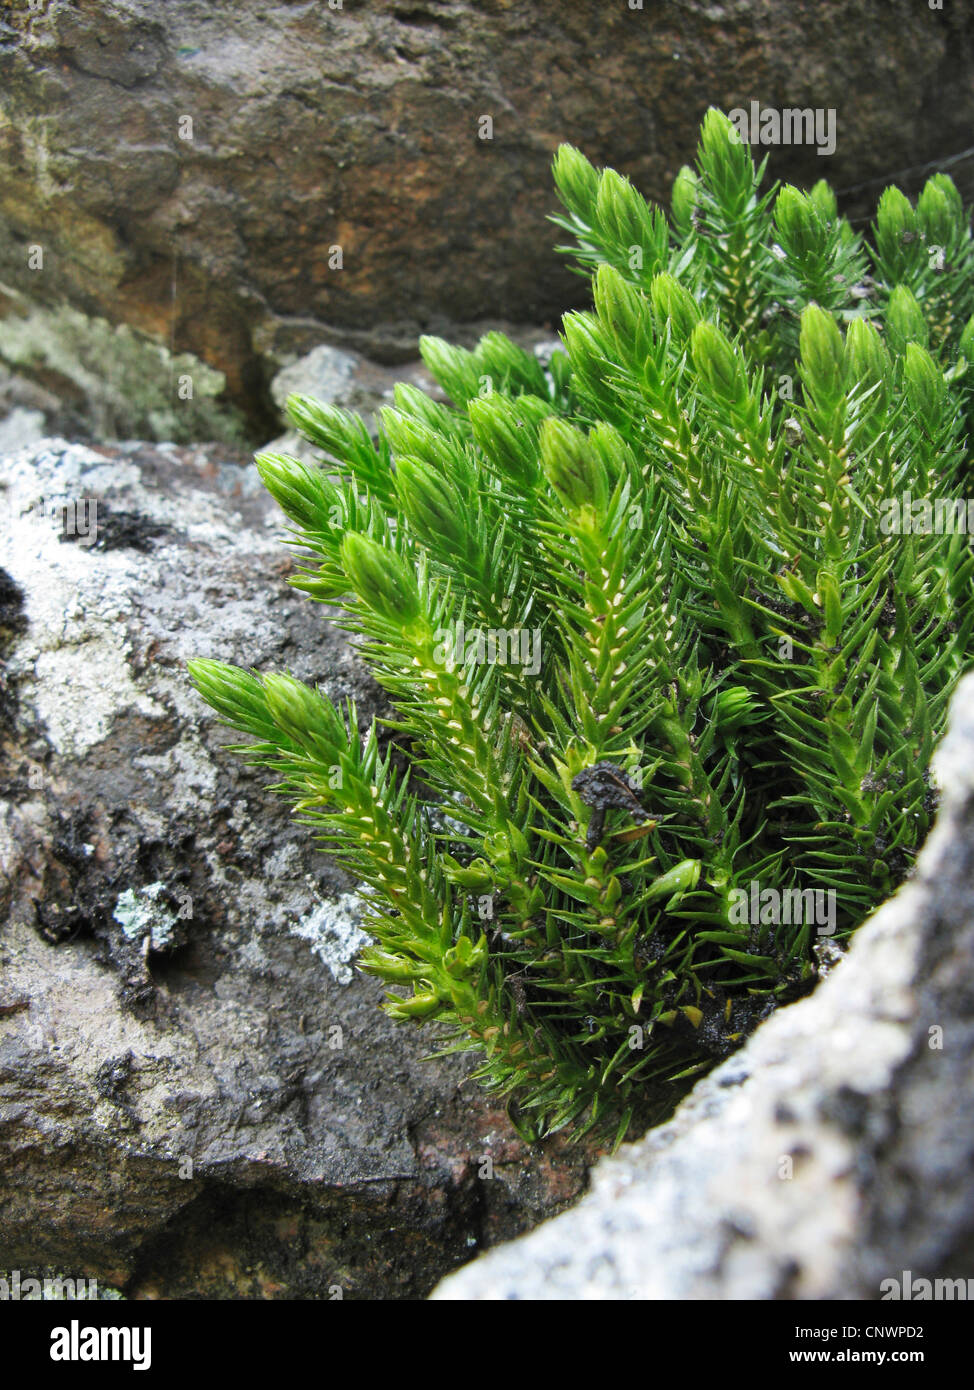 fir clubmoss, mountain clubmoss, fir-clubmoss (Huperzia selago, Lycopodium selago), growing i a rock crevice, Germany, Baden-Wuerttemberg Stock Photo